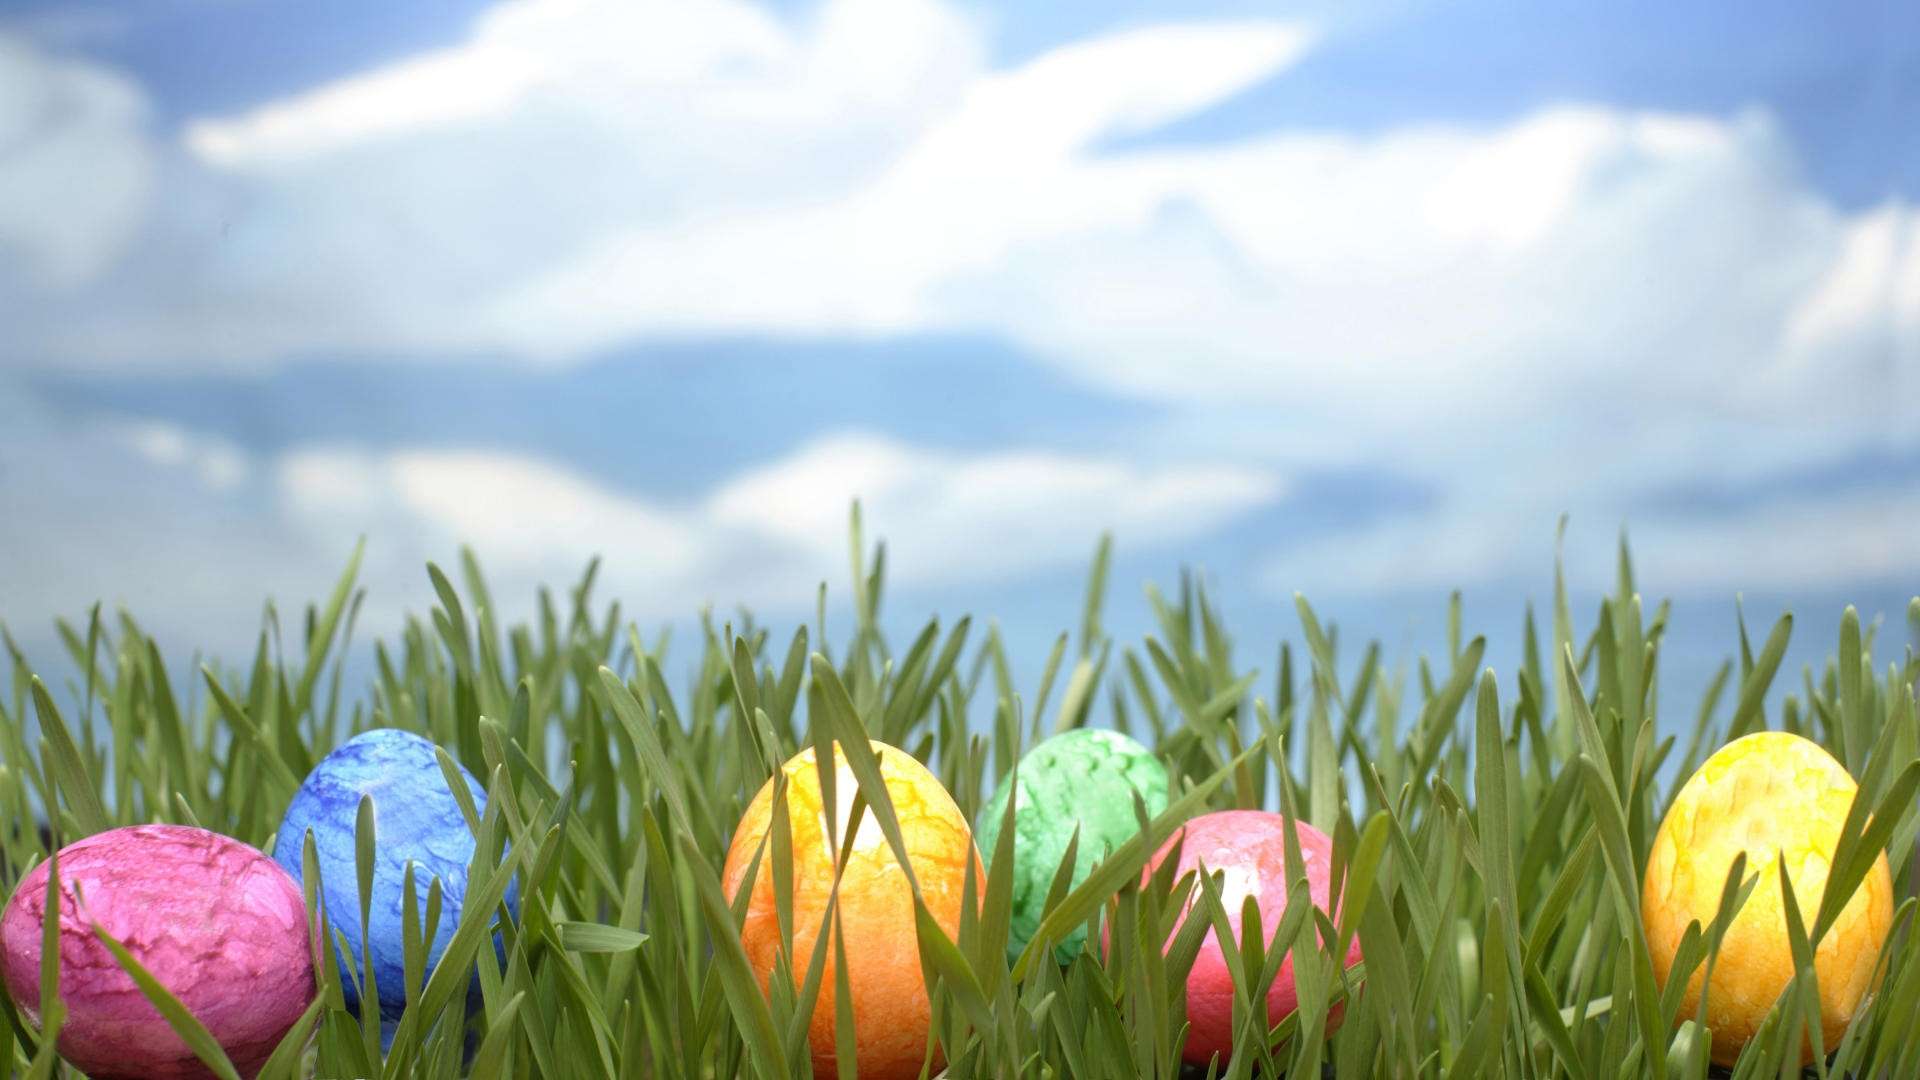 Wallpaper For > Easter Egg Grass Background